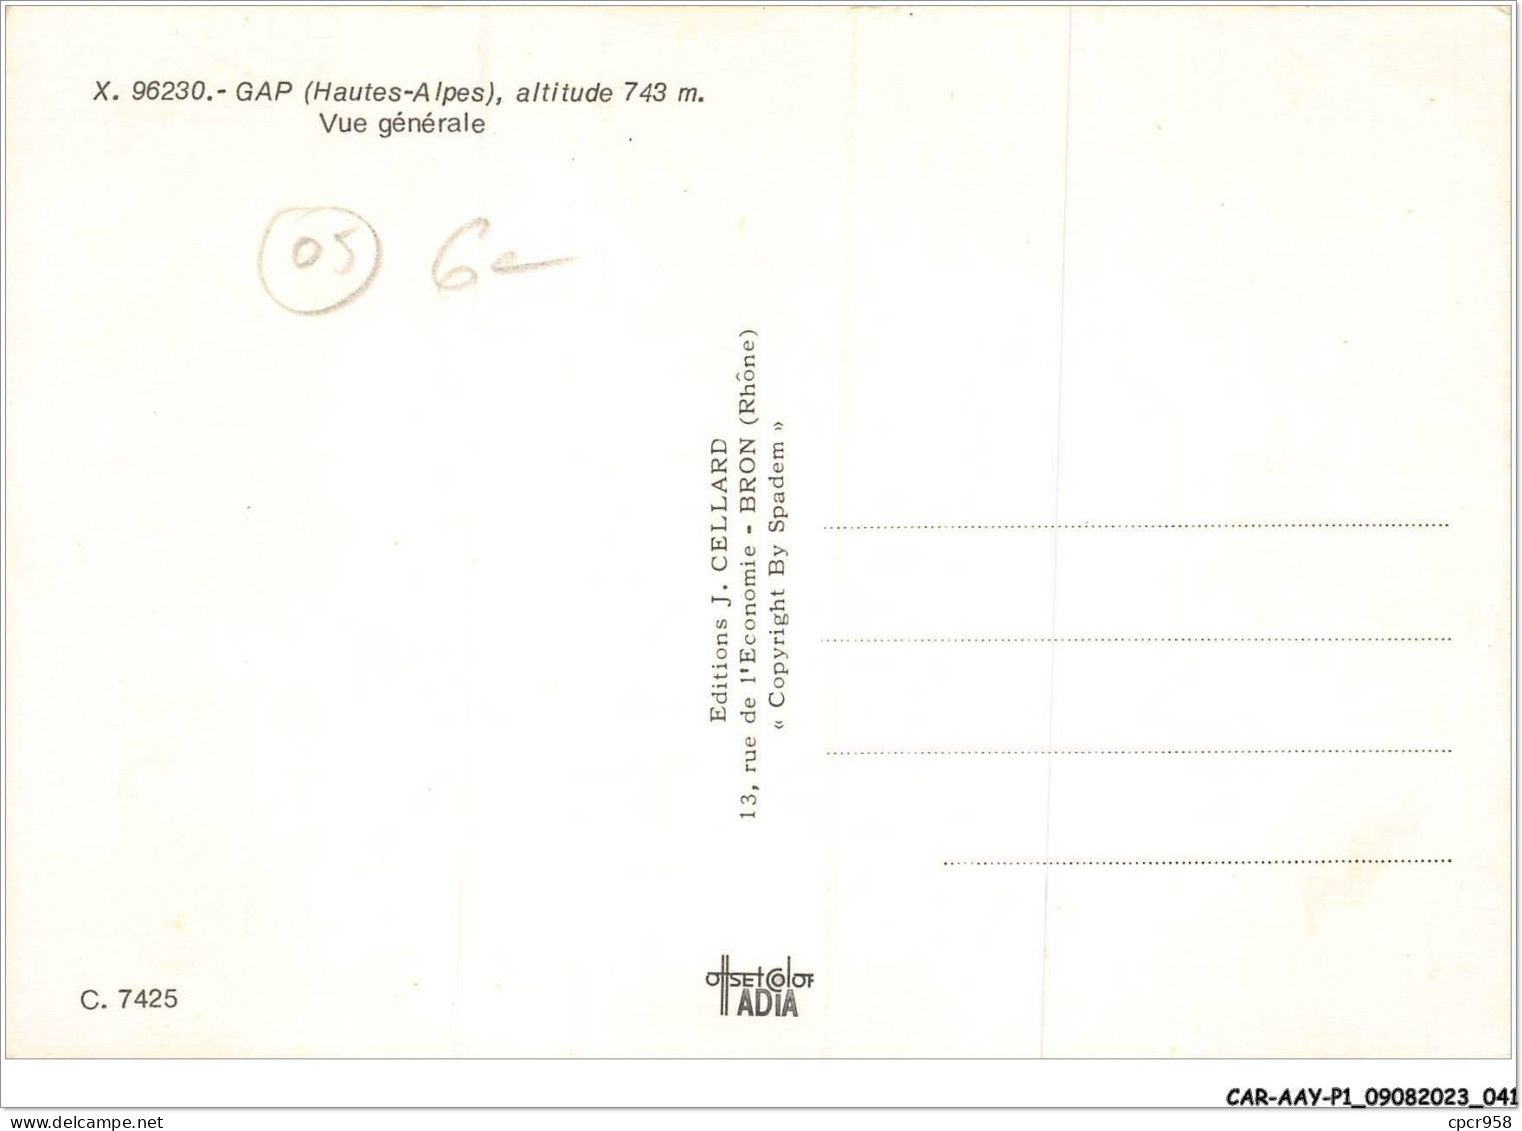 CAR-AAYP1-05-0021 - GAP - Vue Generale - Gap